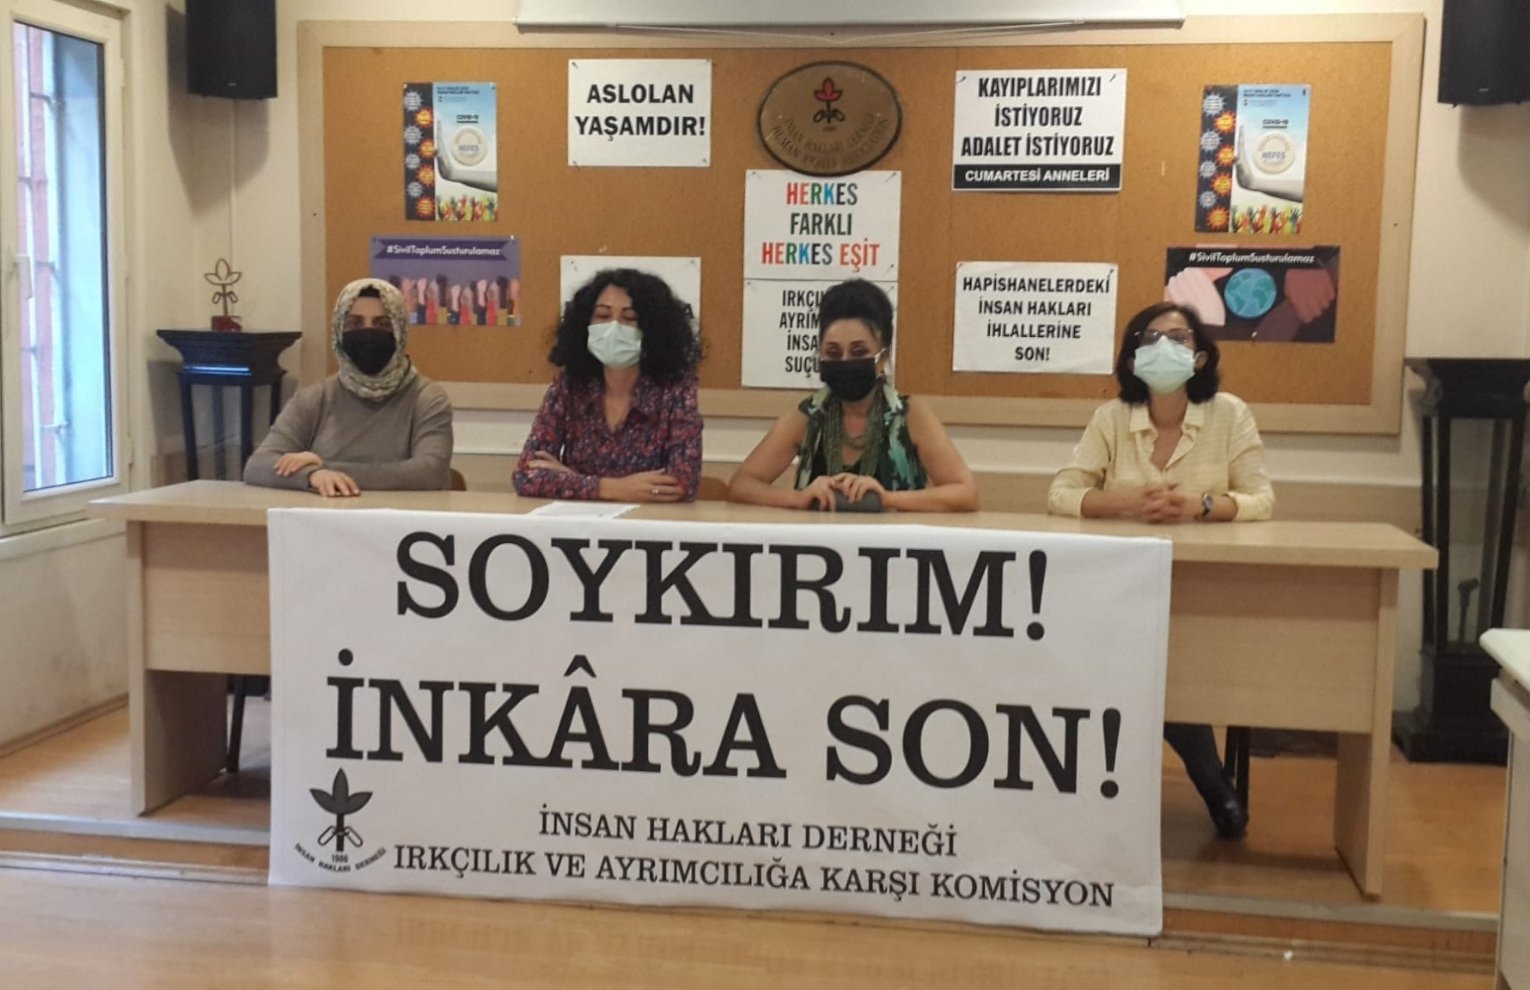 Ստամբուլում ՄԻՊ-ի գրասենյակը դատապարտել է Հայոց ցեղասպանությունը